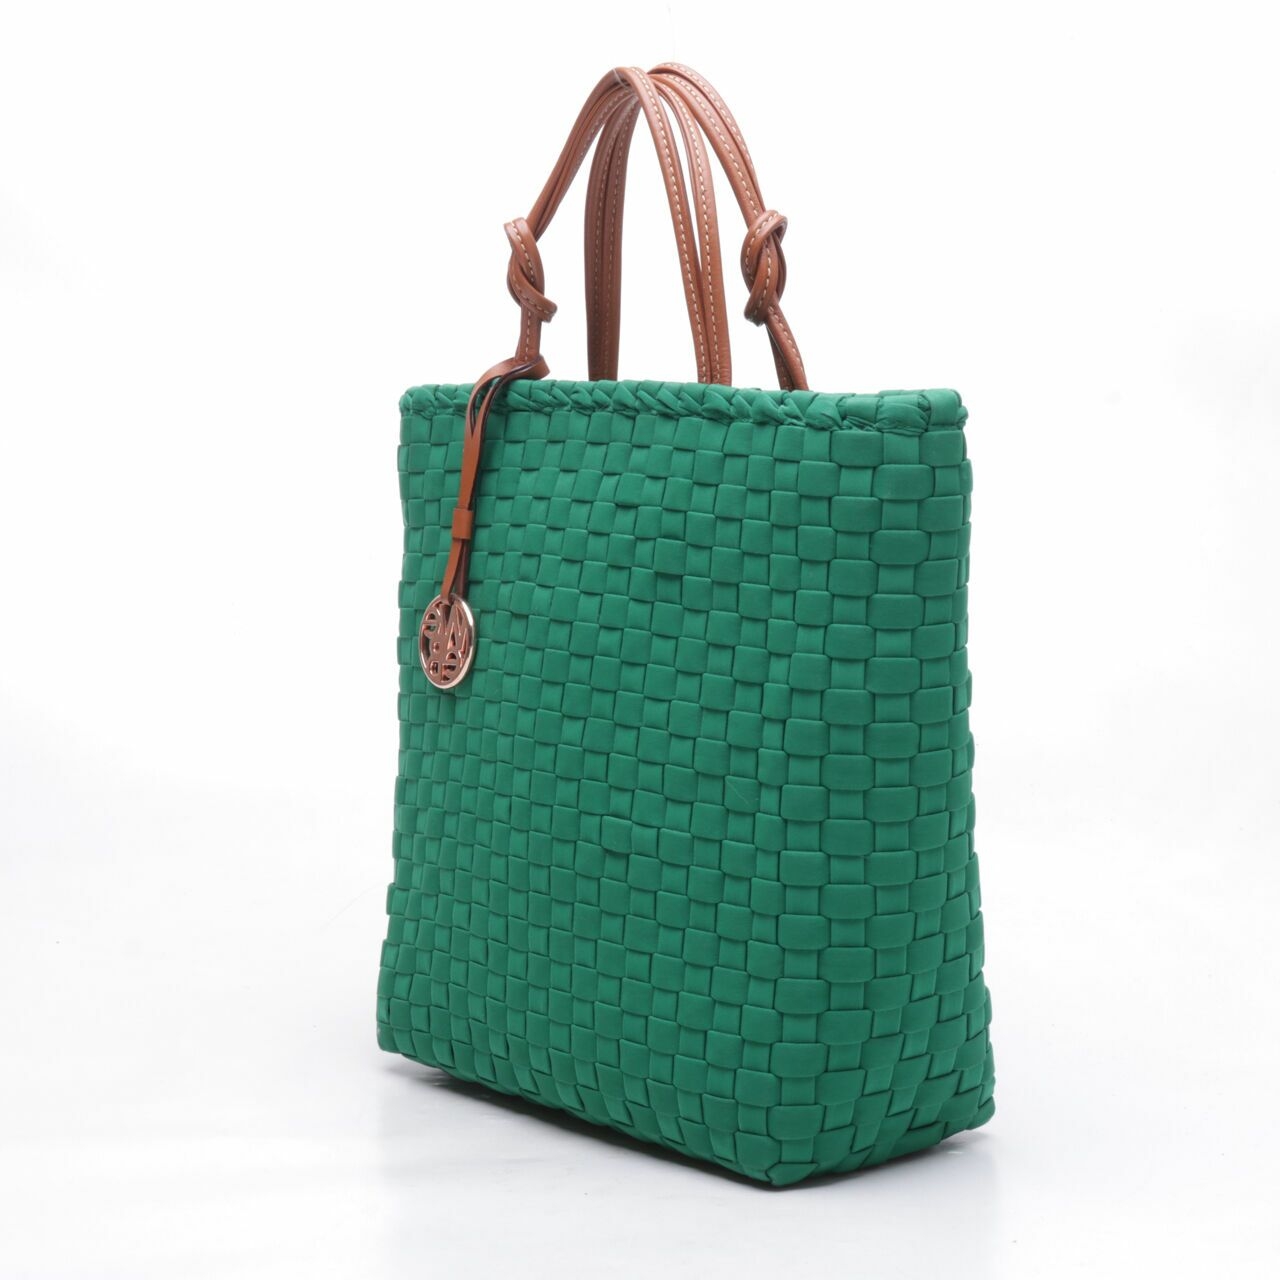 Webe Green Tote Bag